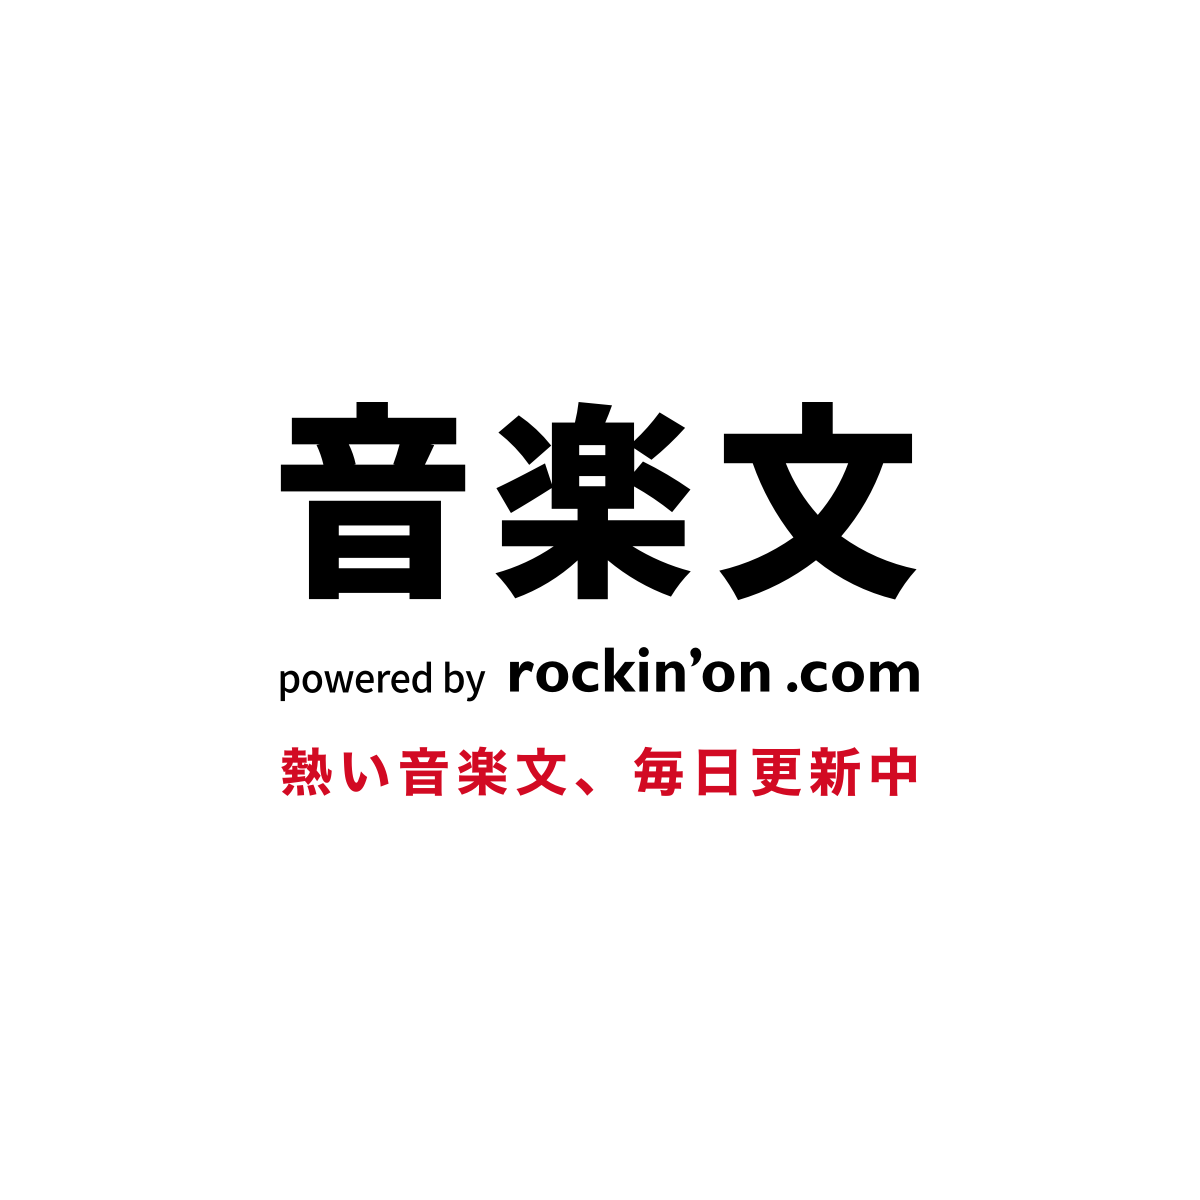 古元素 – 音楽文 powered by rockinon.com